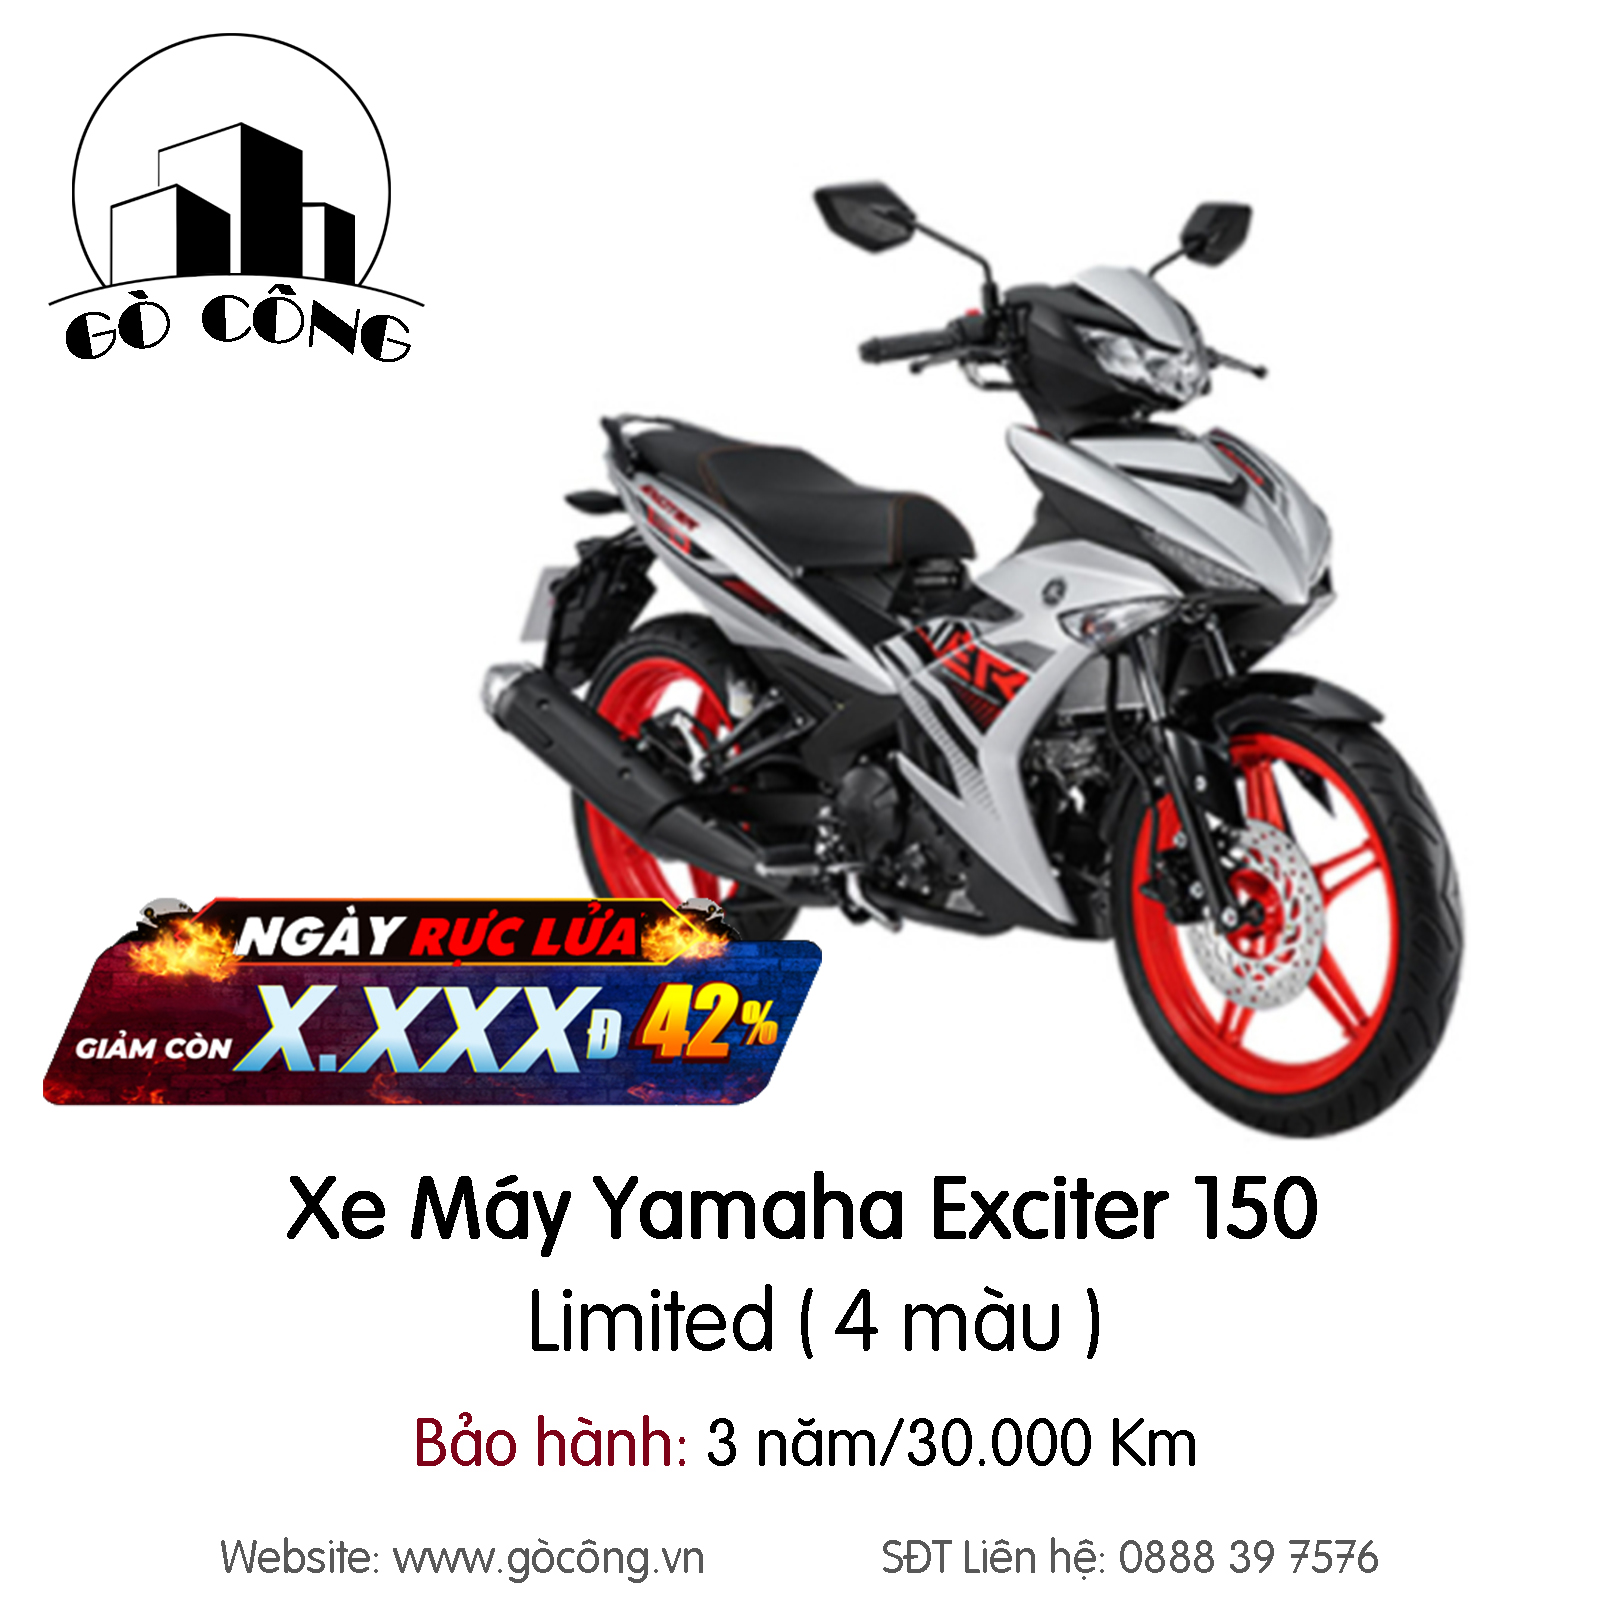 Yamaha Exciter 150 2020 có biến thể mới đẹp mê ly giá hấp dẫn khiến fan  phát cuồng  Doanh ngiệp và Pháp luật  Kênh thông tin Doanh nghiệp và Pháp  luật Doanh nghiệp